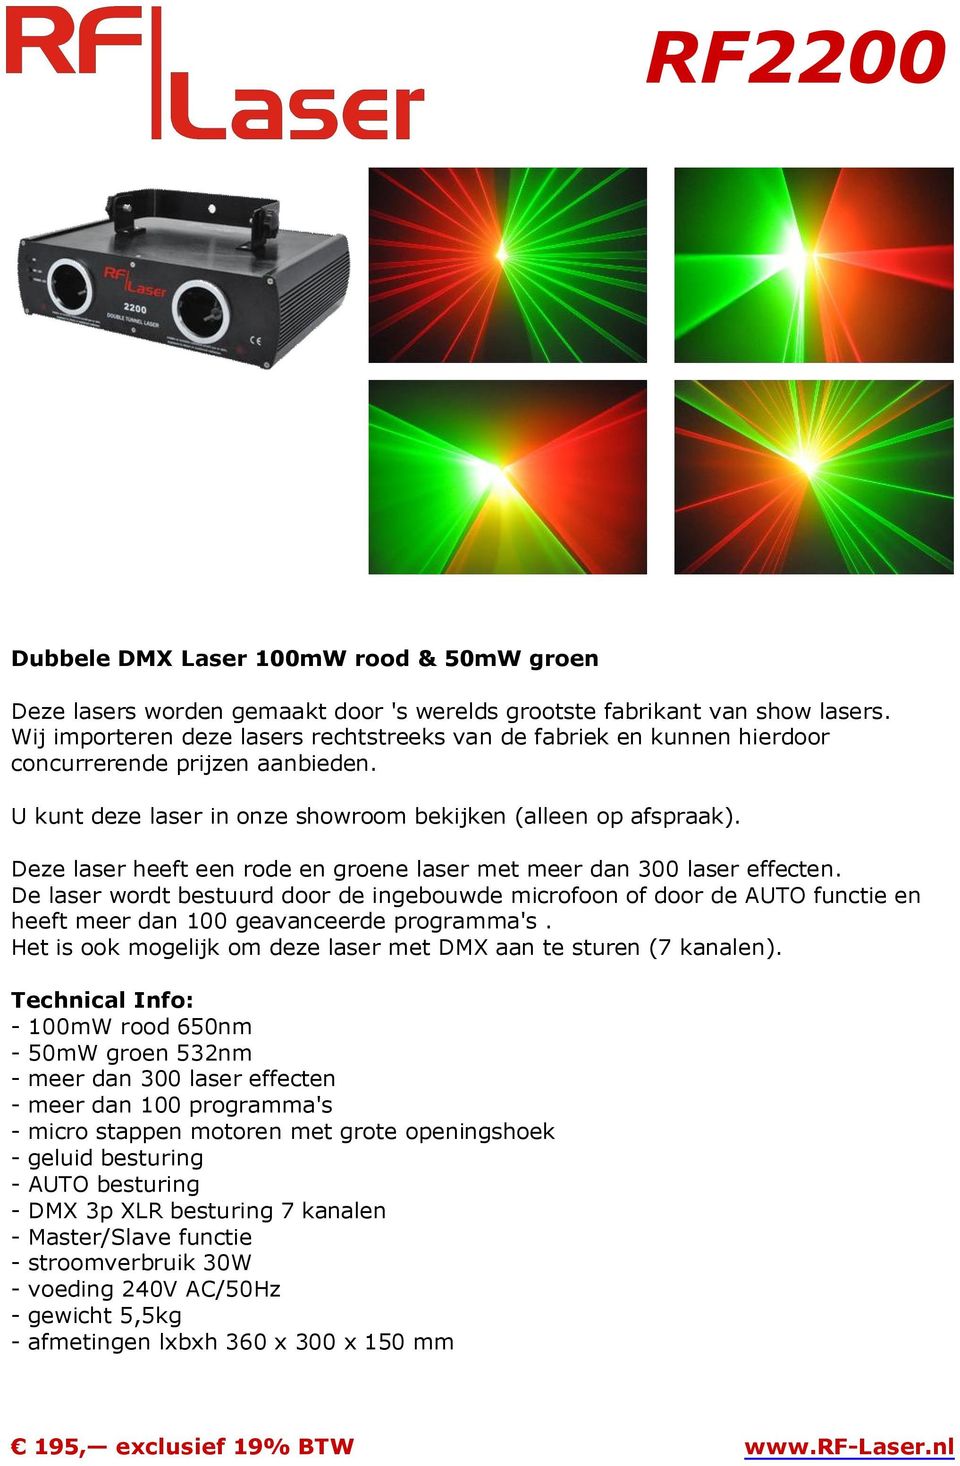 Het is ook mogelijk om deze laser met DMX aan te sturen (7 kanalen).